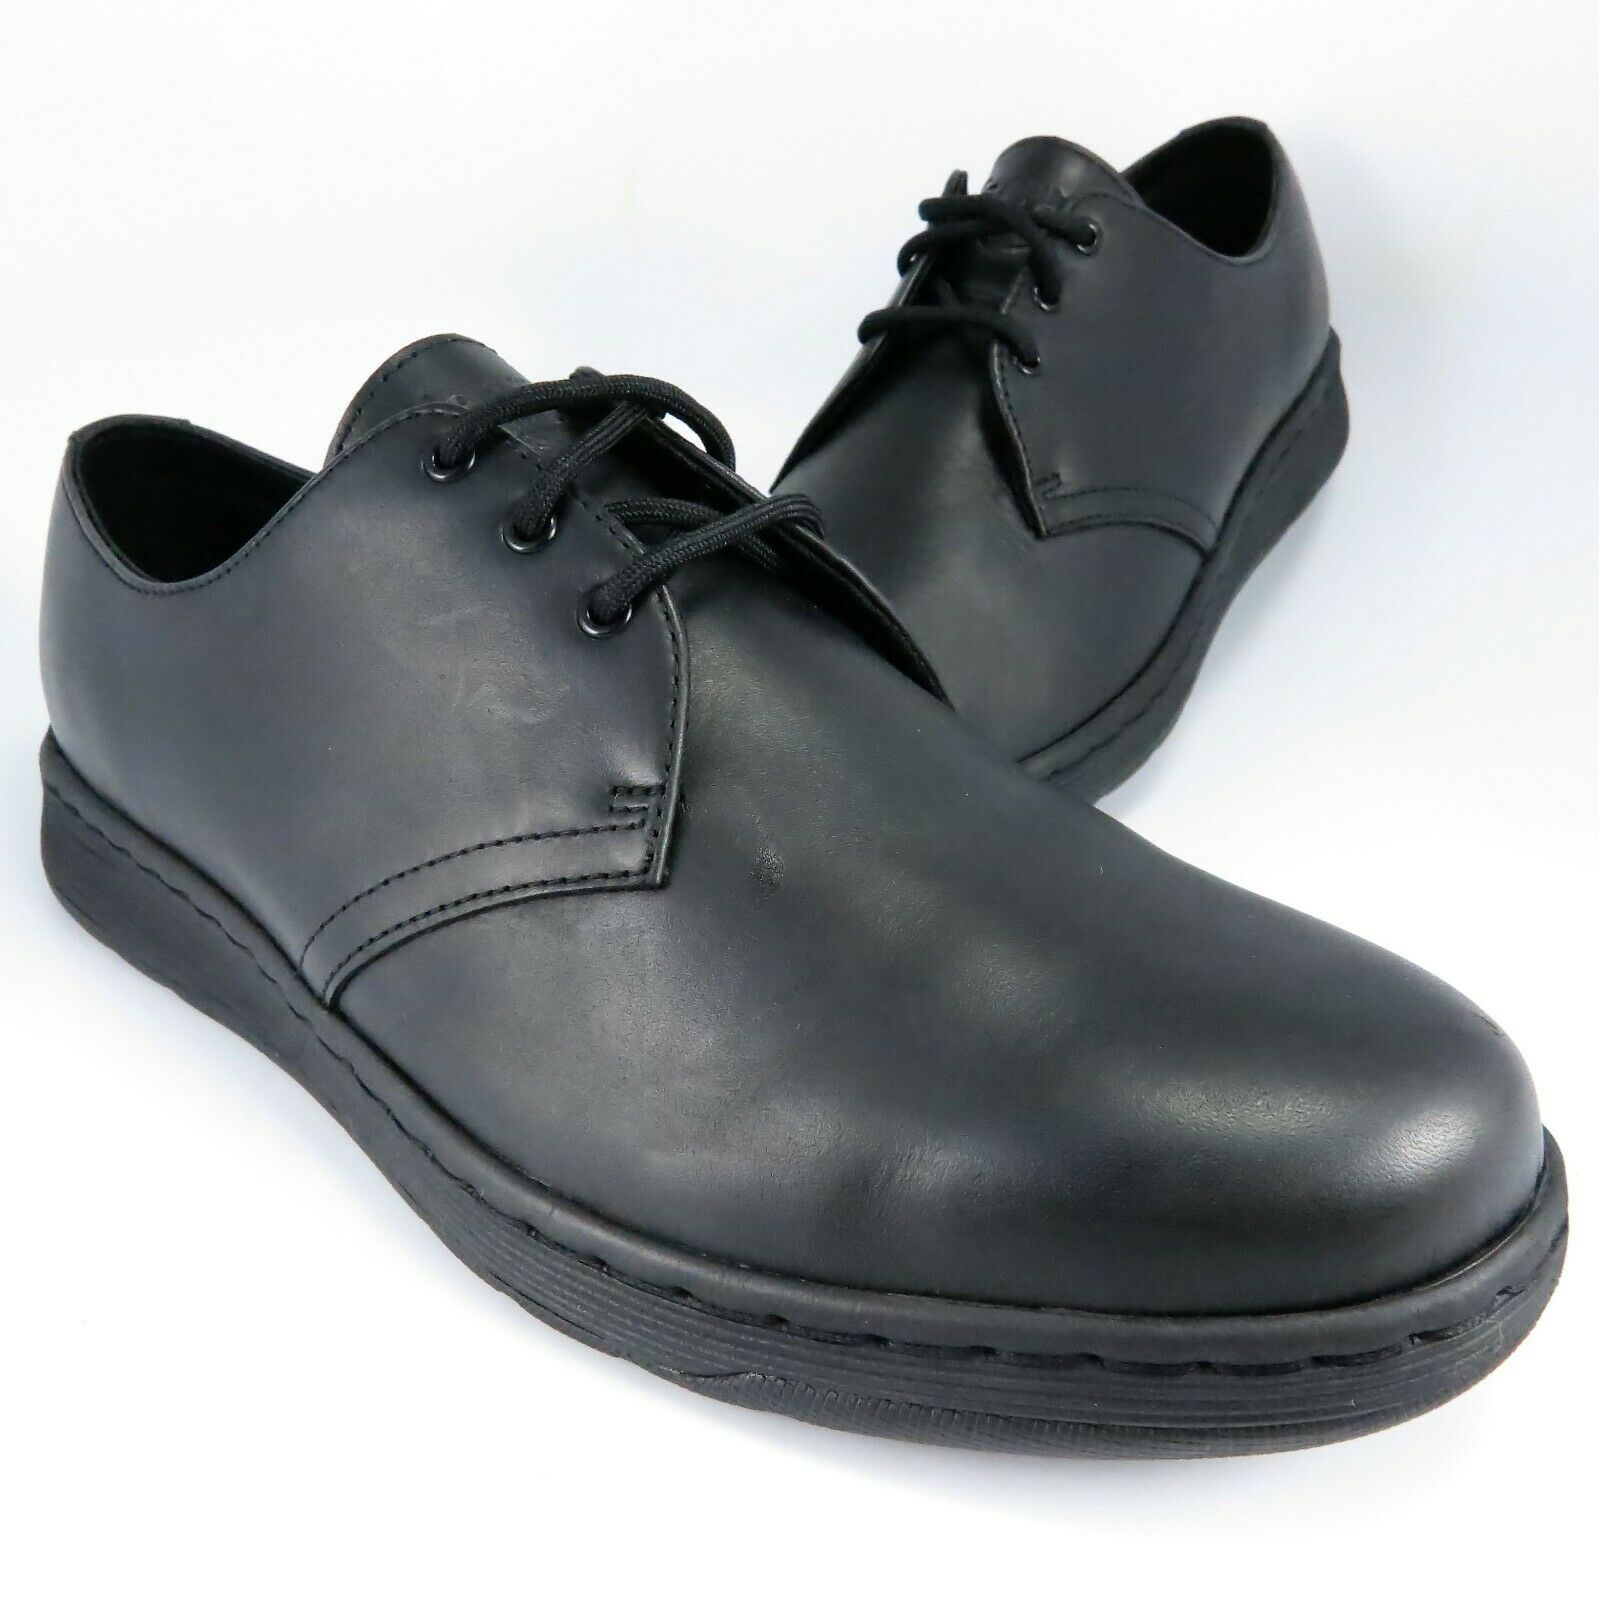 Dr Doc Martens CAVENDISH Oxfords Mens Size 10M Black Leather Lace-Up Dress Shoes